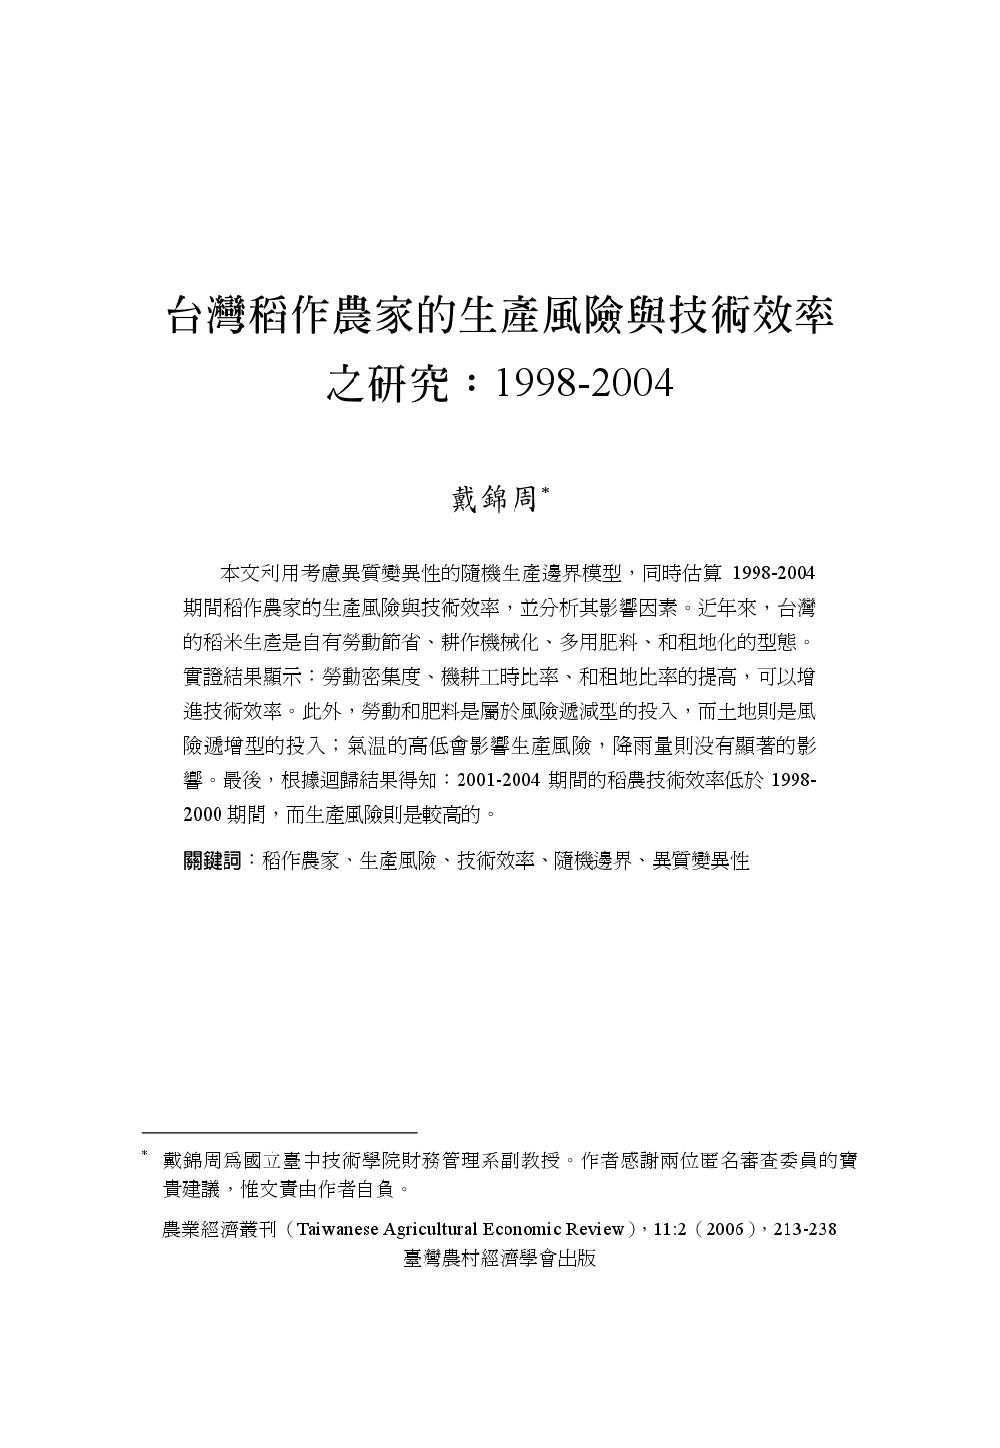 台灣稻作農家的生產風險與技術效率之研究_1998-2004.jpg